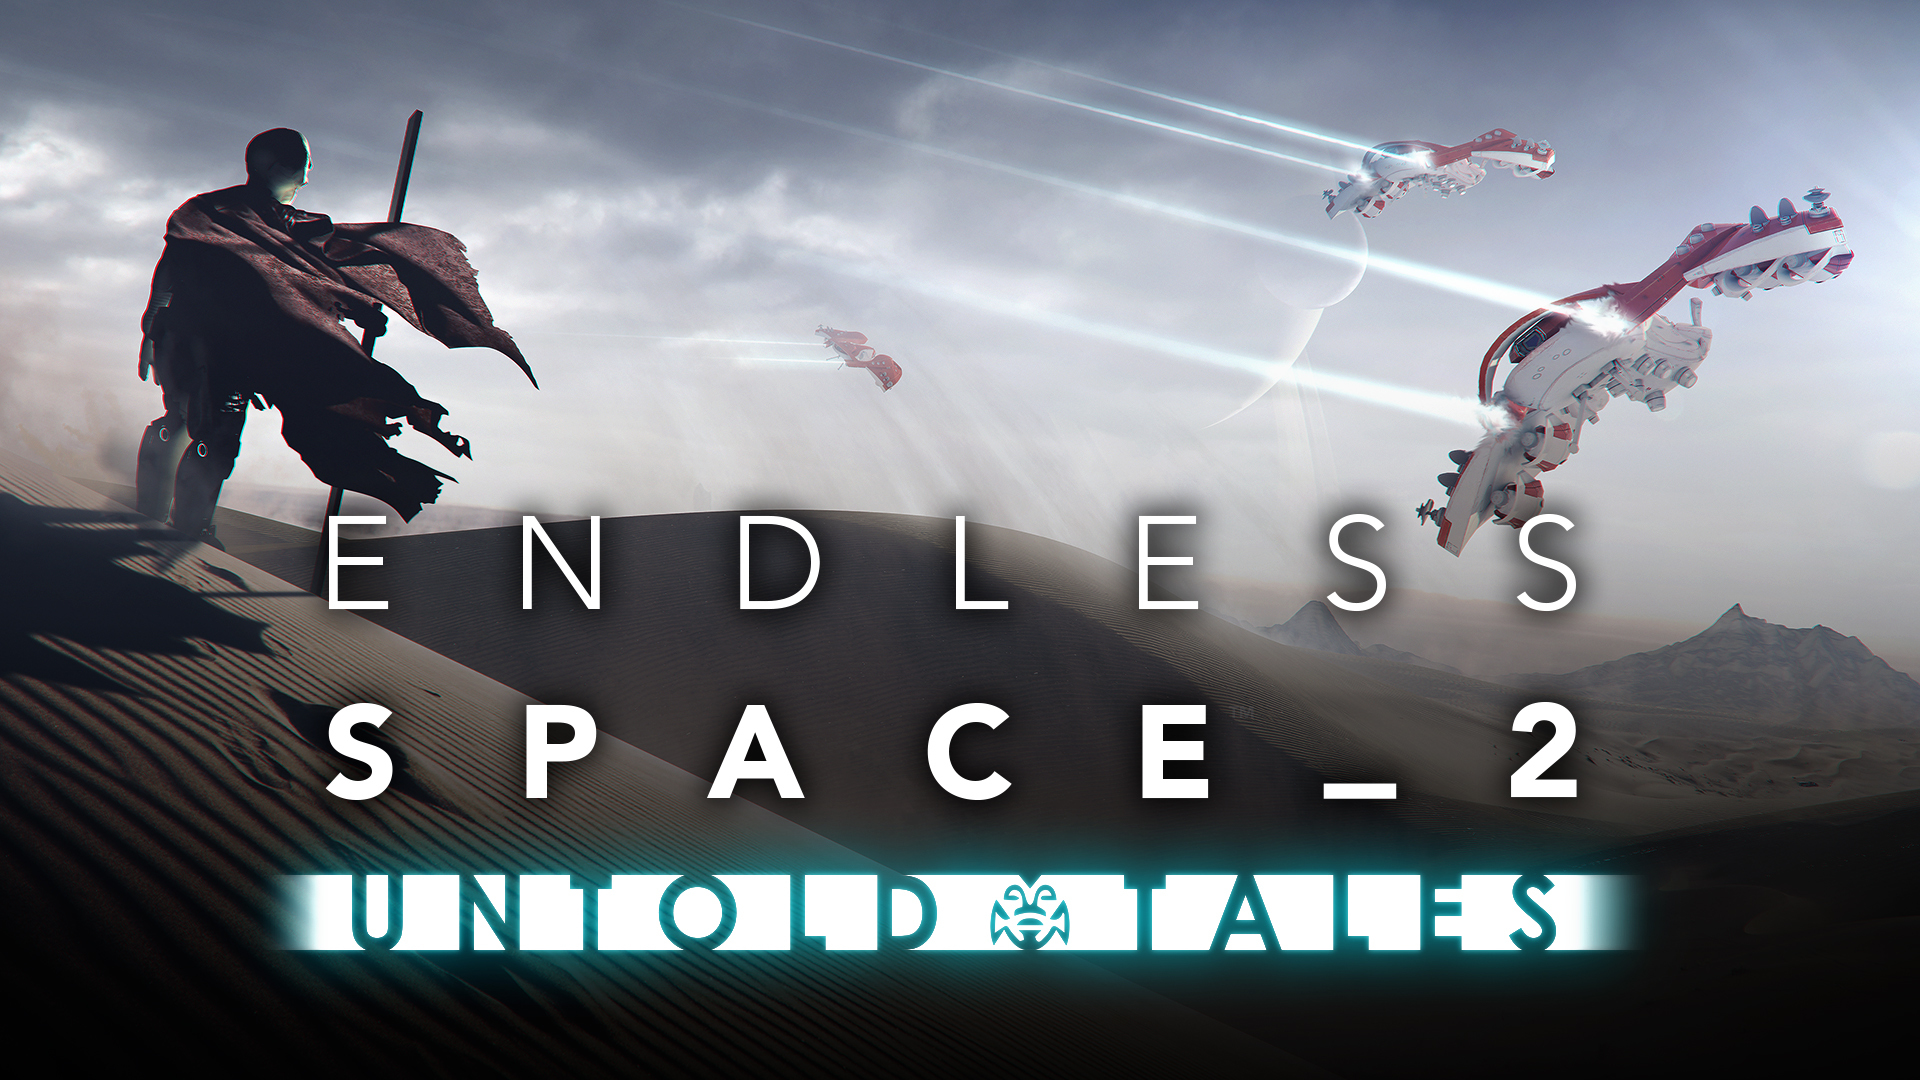 Resultado de imagem para Endless Space 2 - Untold Tales